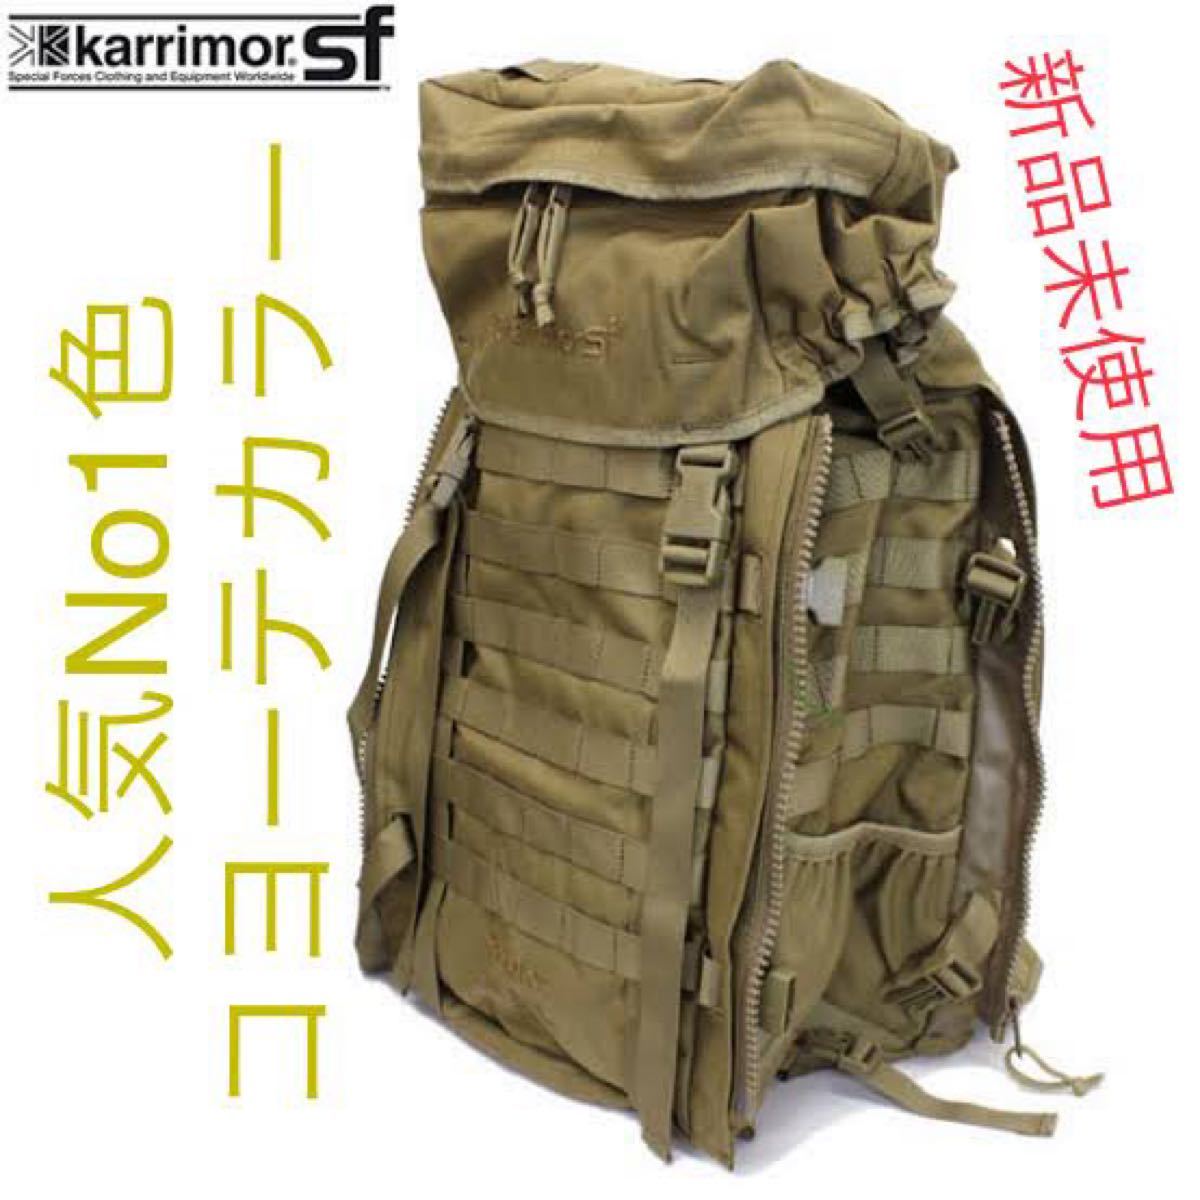 新品未使用】karrimor sf predator patrol 45(カリマーsf プレデター45) コヨーテ